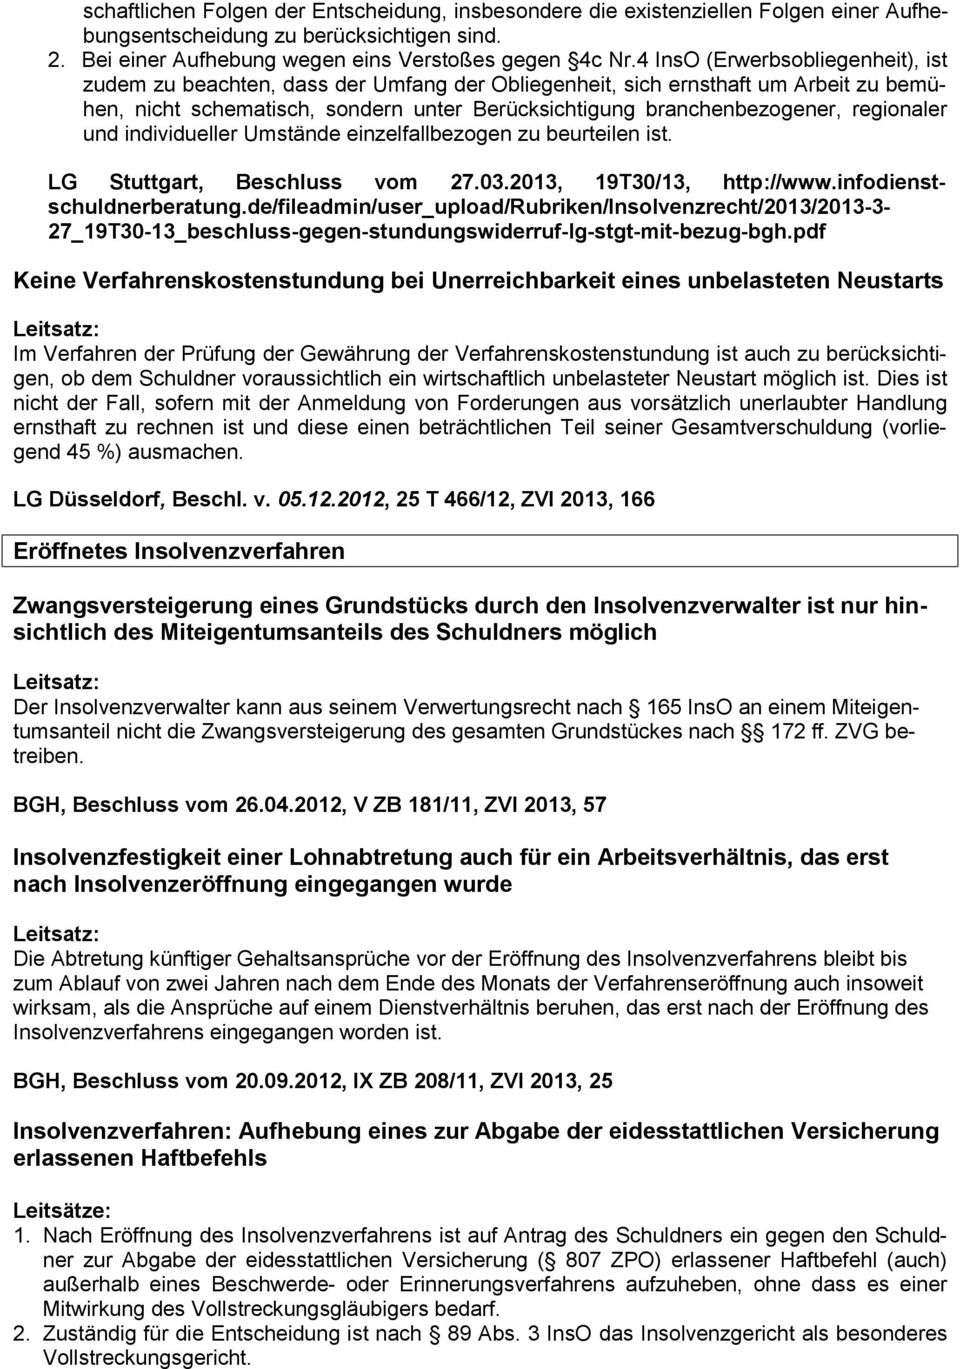 regionaler und individueller Umstände einzelfallbezogen zu beurteilen ist. LG Stuttgart, Beschluss vom 27.03.2013, 19T30/13, http://www.infodienst- schuldnerberatung.